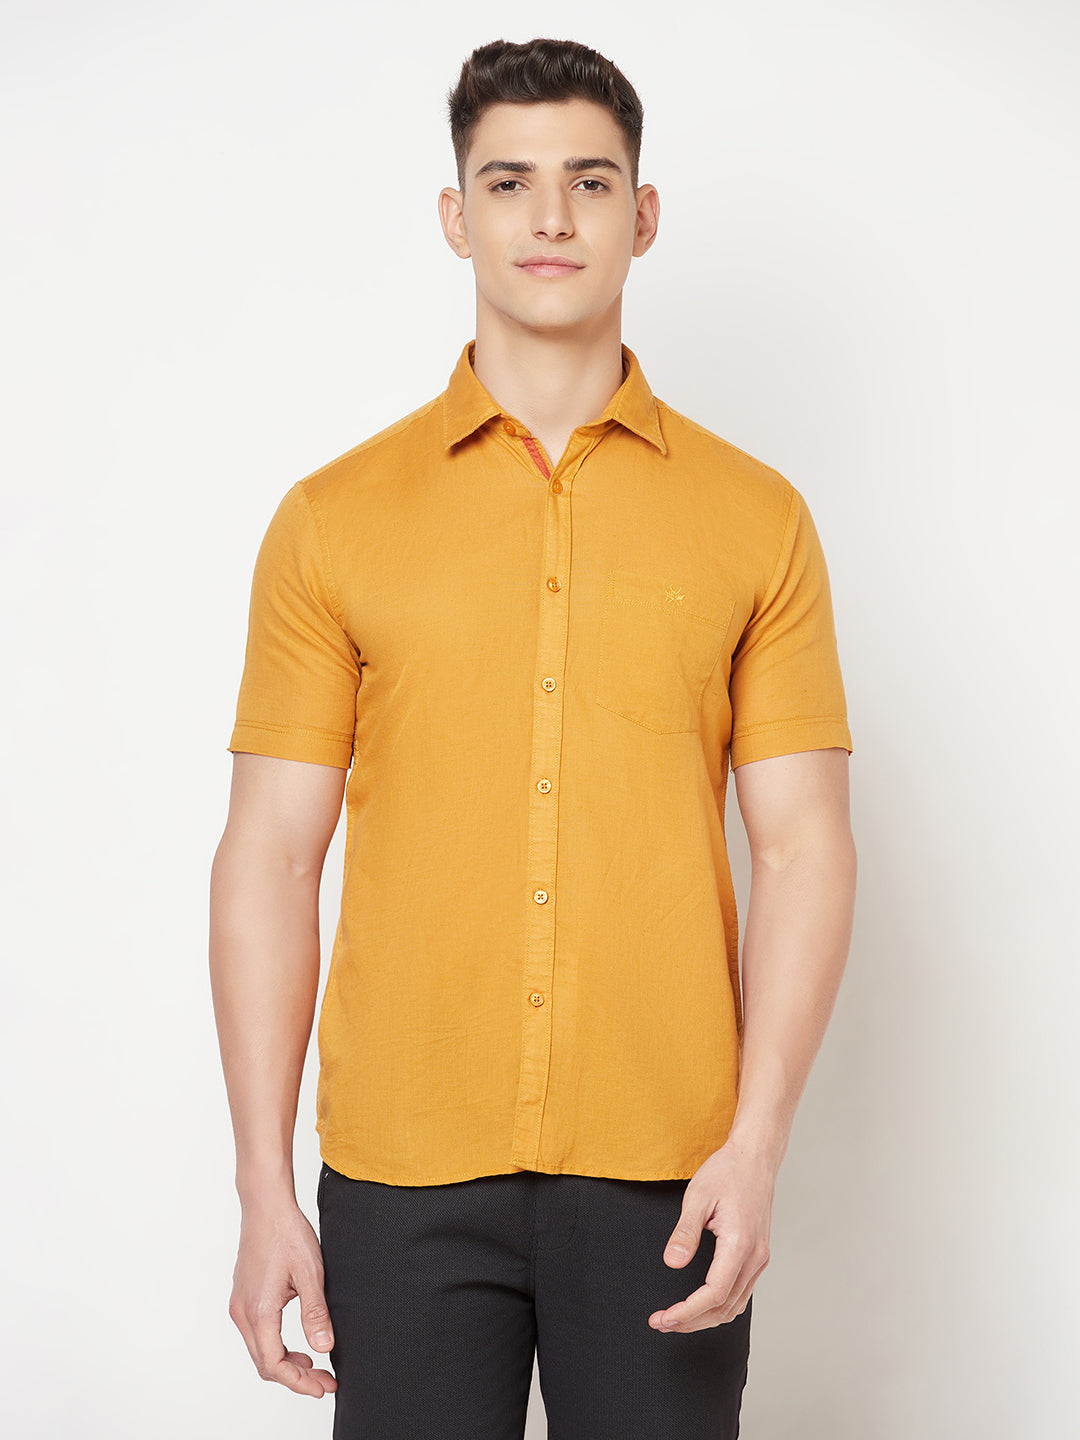 Mustard Linen Shirt - Men Shirts